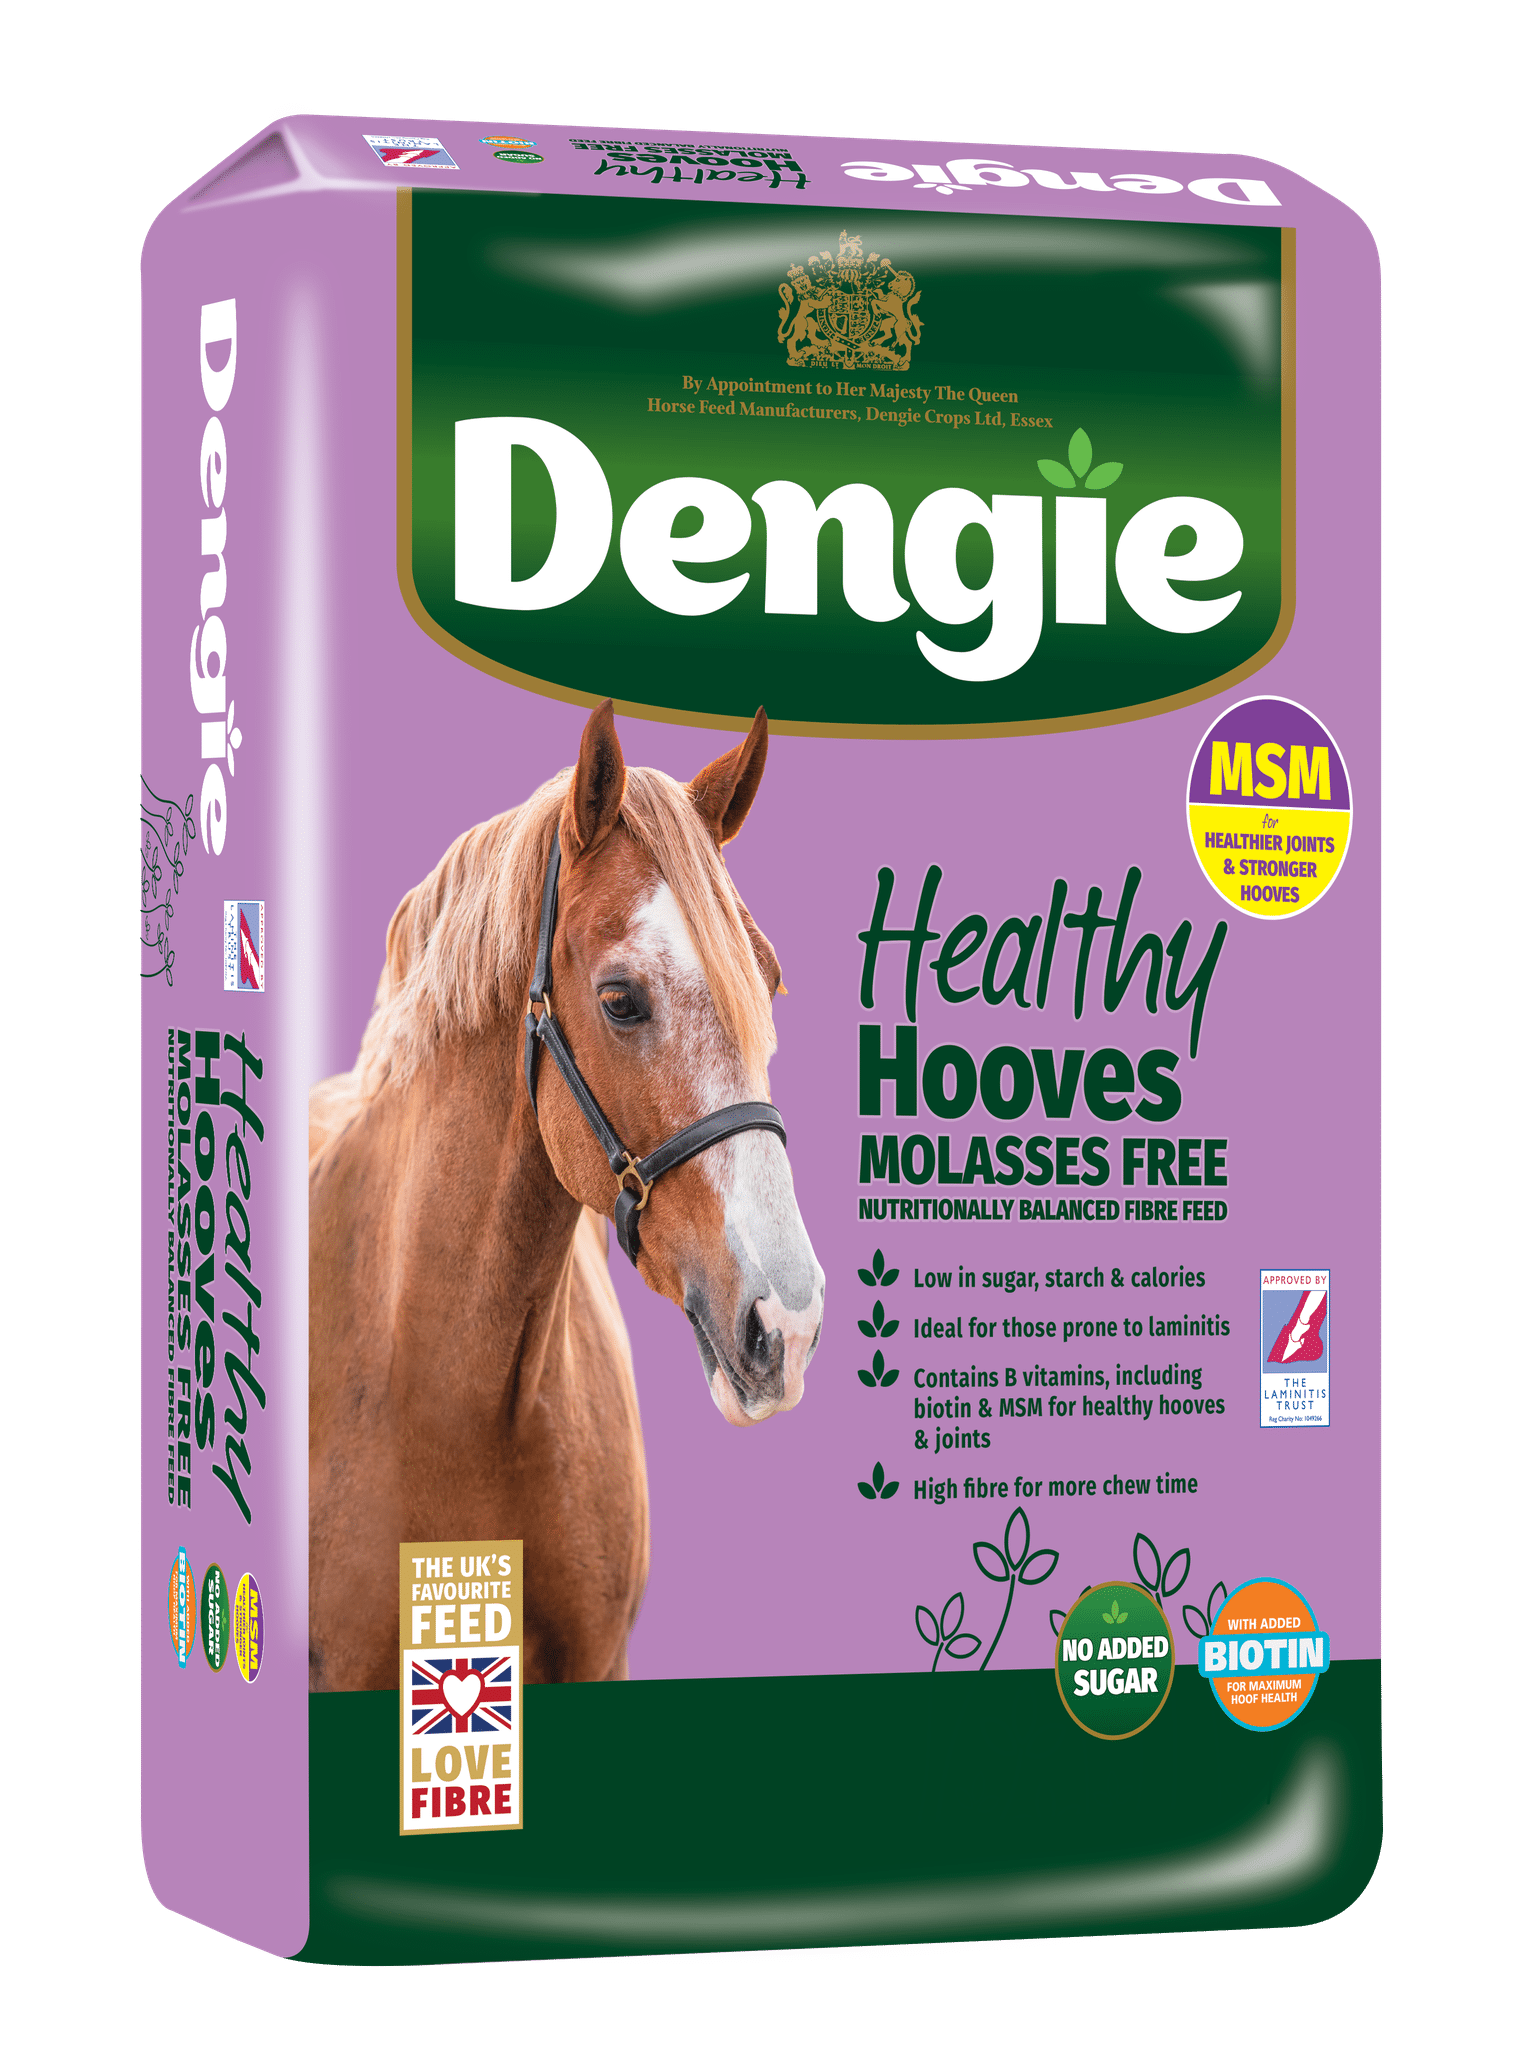 Dengie Healthy Hooves Molasses Free z MSM 20kg - sieczka dla koni z dodatkiem biotyny (Zdjęcie 1)